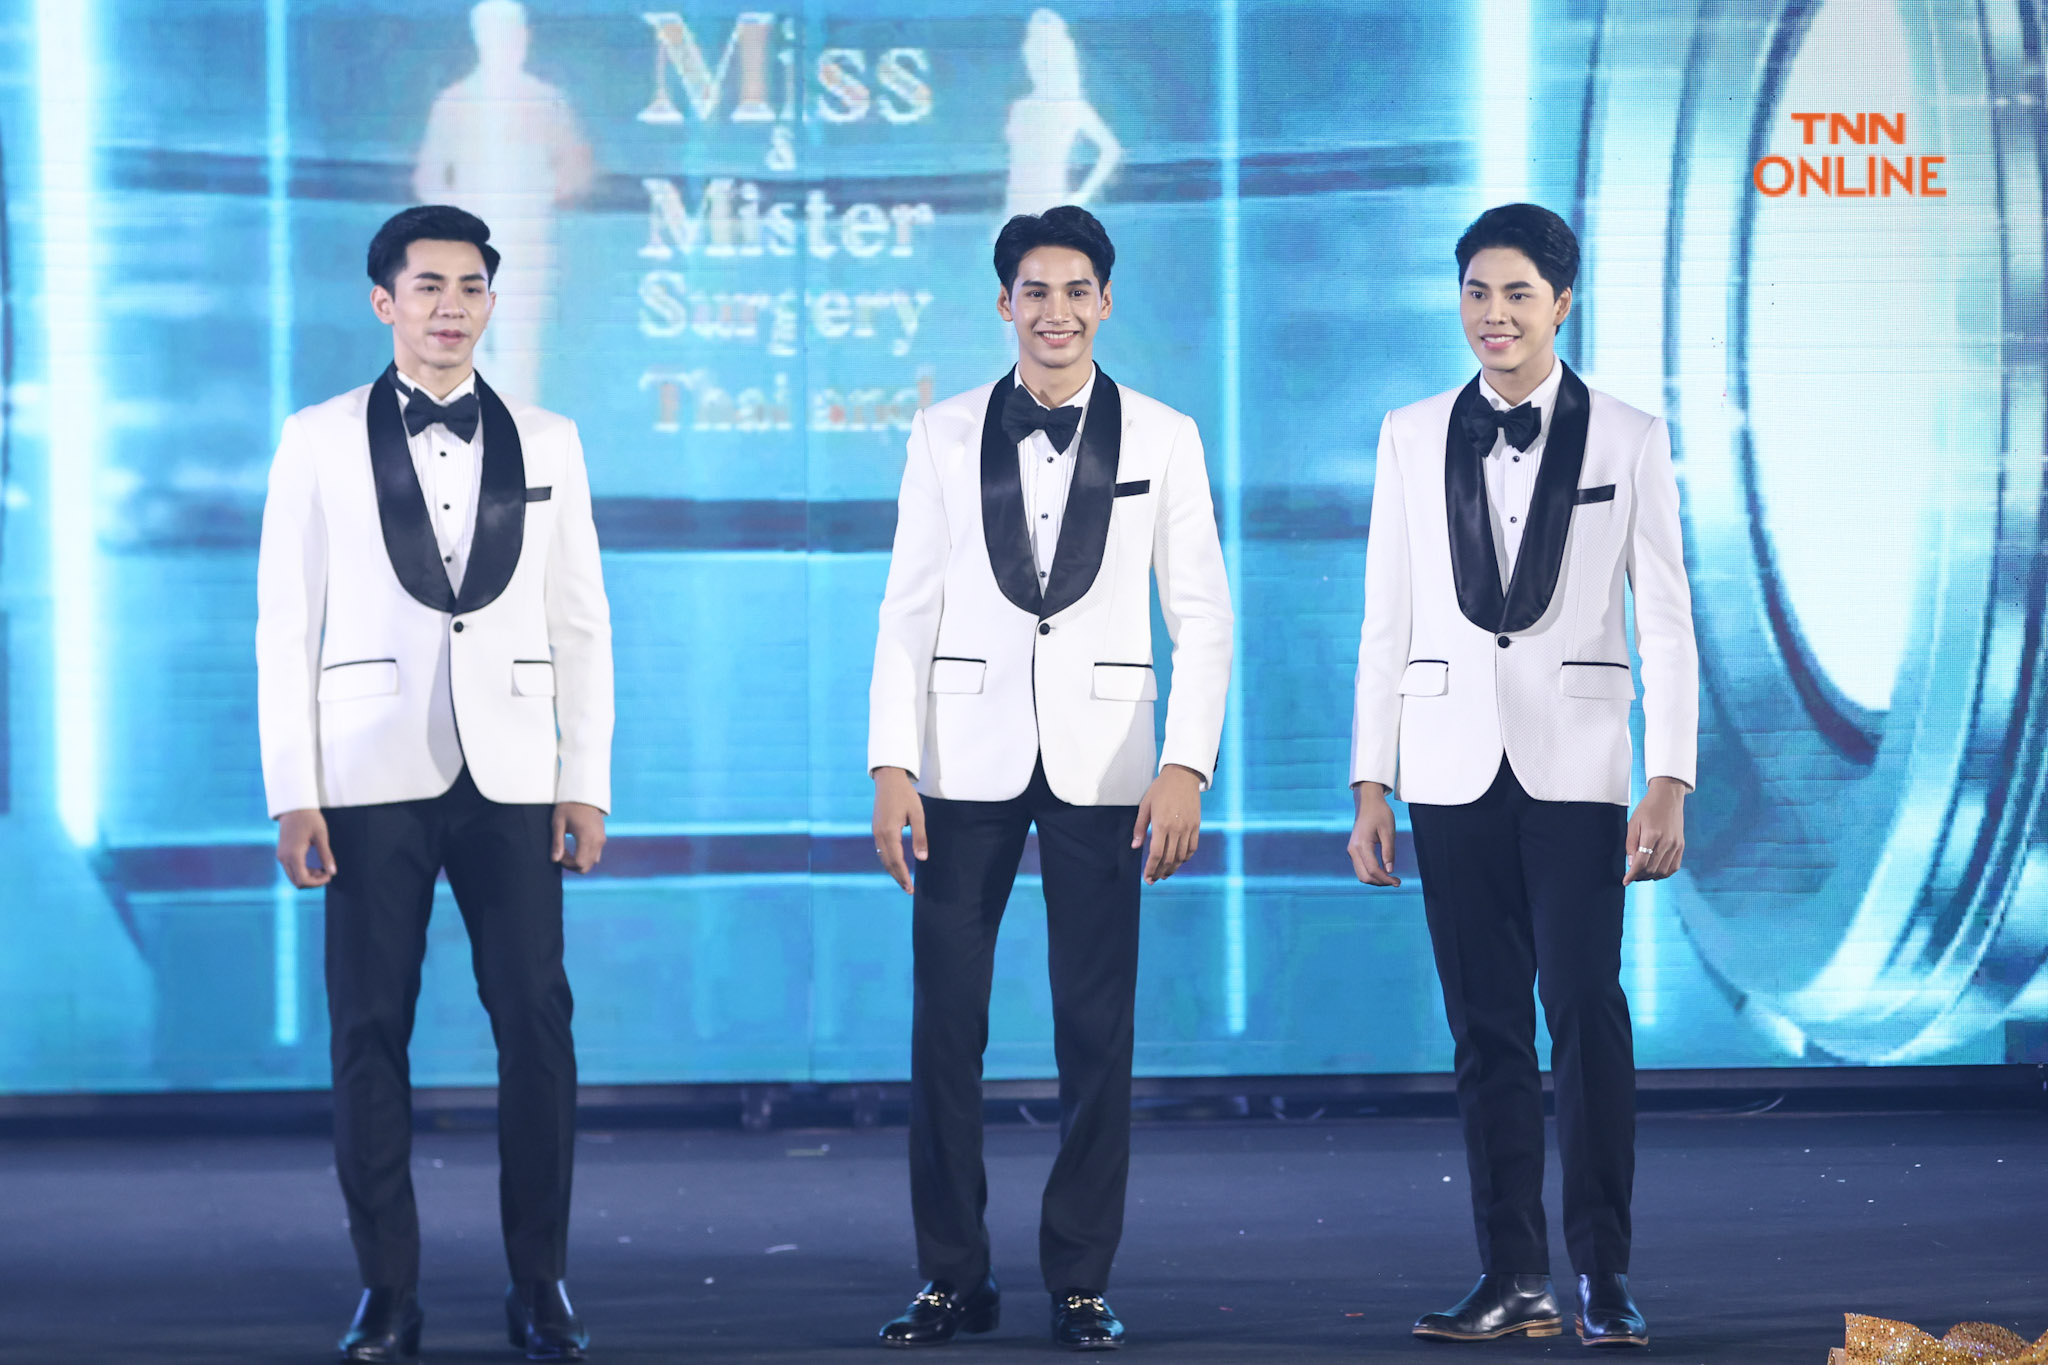 “น้ำเมย-เธียร์เตอร์-หมีพูห์” คว้ามงกุฎ Miss, Mister และ Miss Queen เวที Miss and Mister Surgery Thailand 2022 เตรียมประกวดเวทีระดับโลก “กิ๊-นิวัฒน์ นาคนวล” คว้า Mister Tourism World Thailand 2022 หนุ่มหล่อทูตการท่องเที่ยวไทย